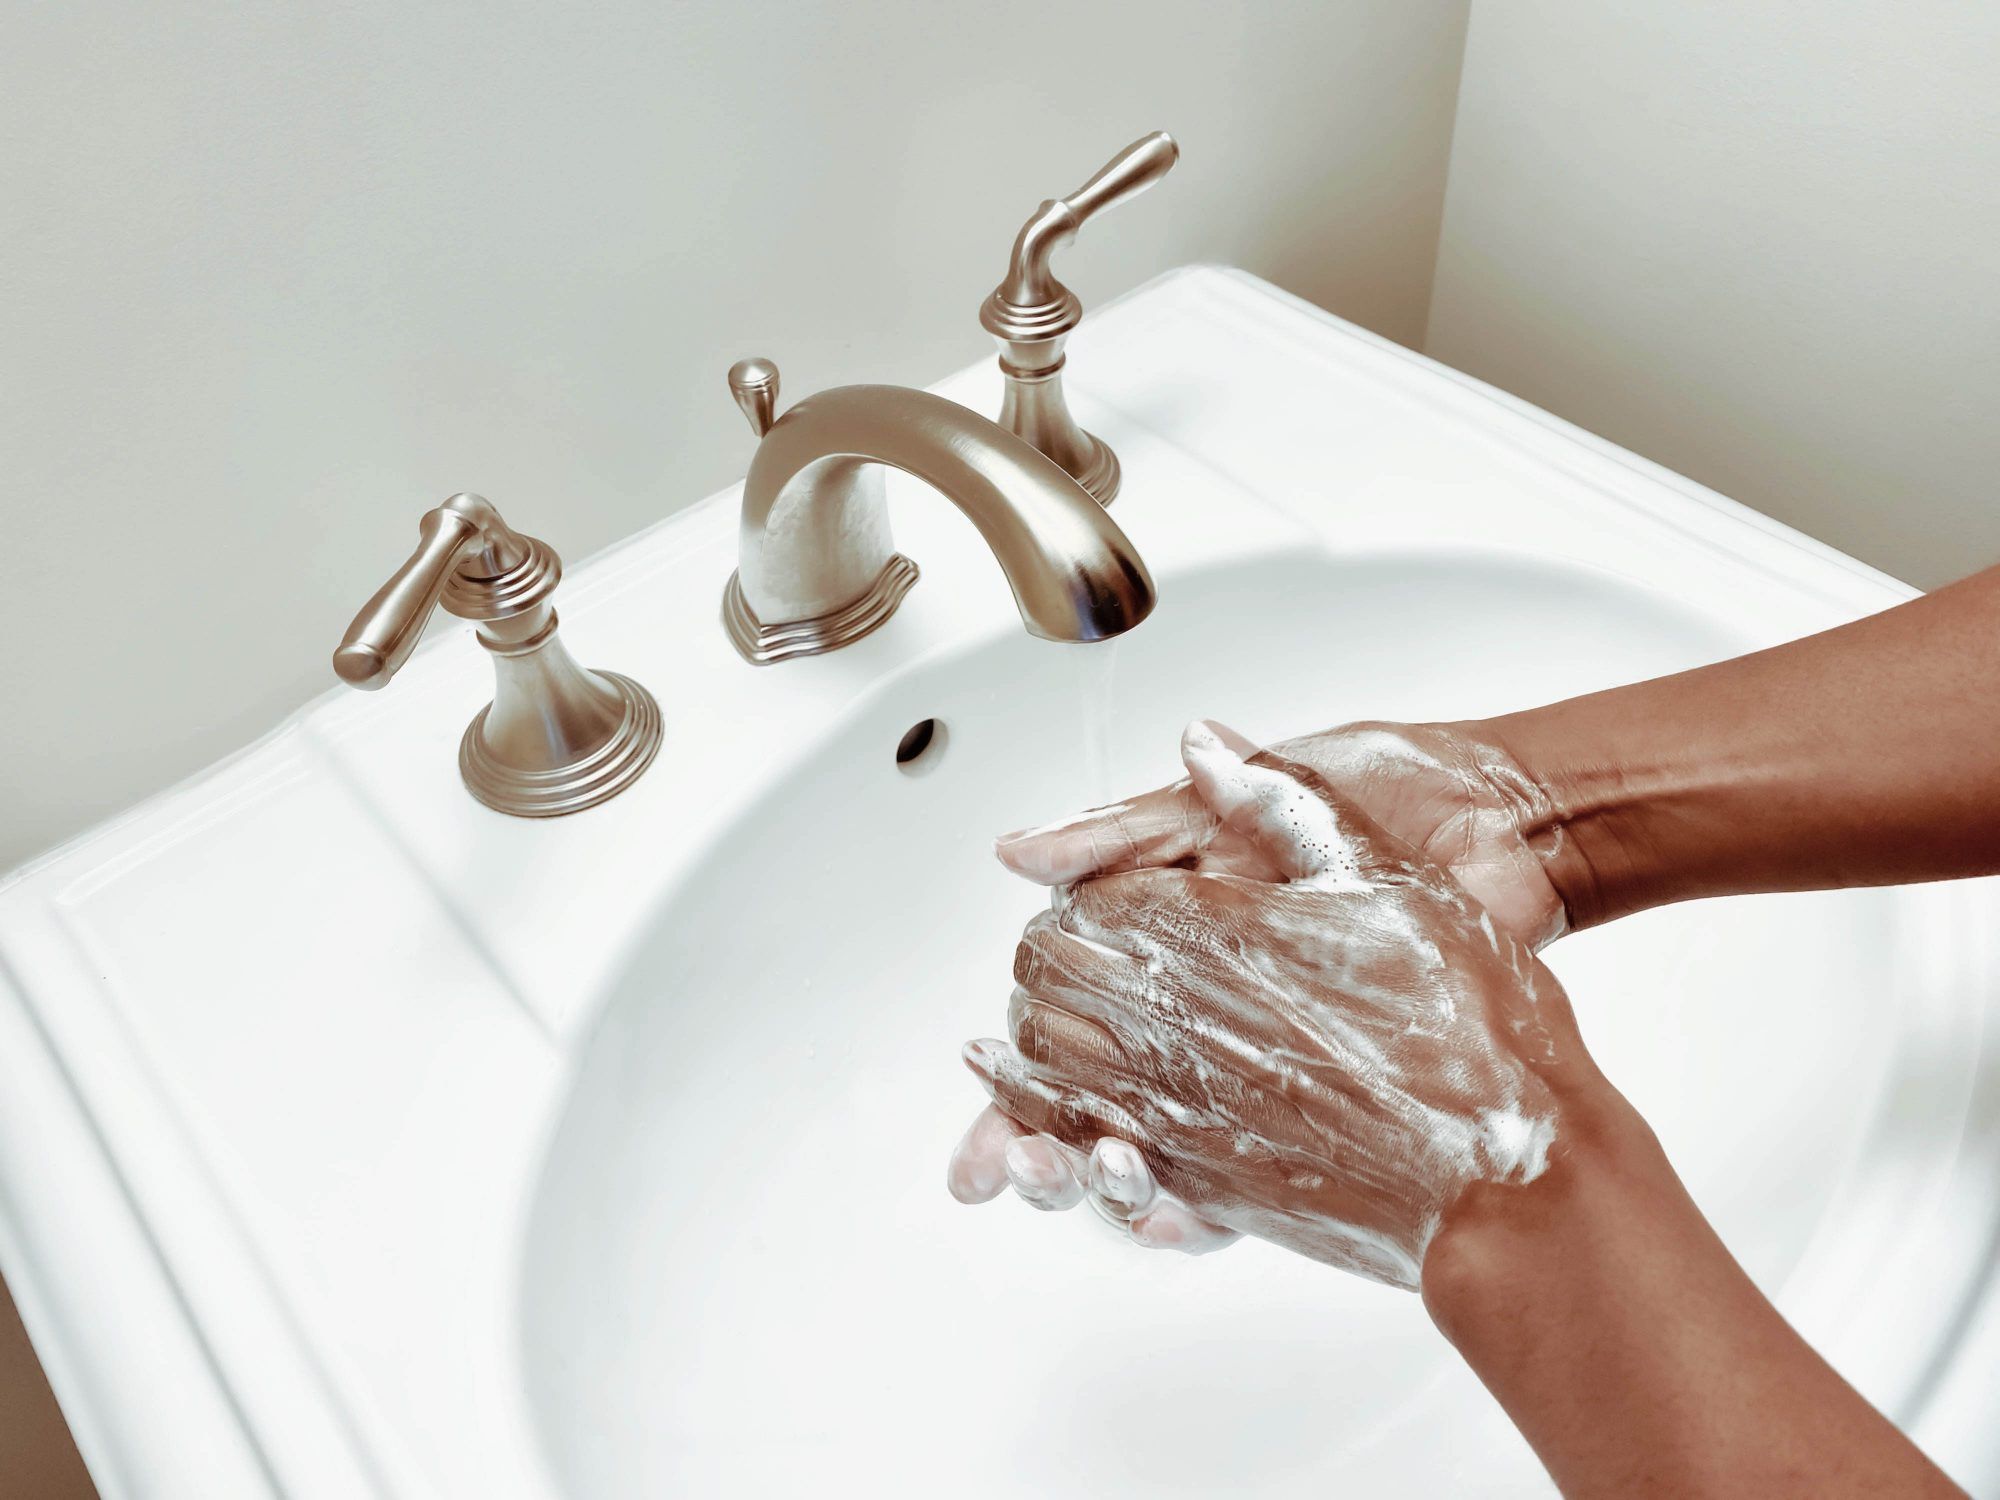 Du gjør sannsynligvis disse 7 feilene ved håndvask - her skal du gjøre i stedet